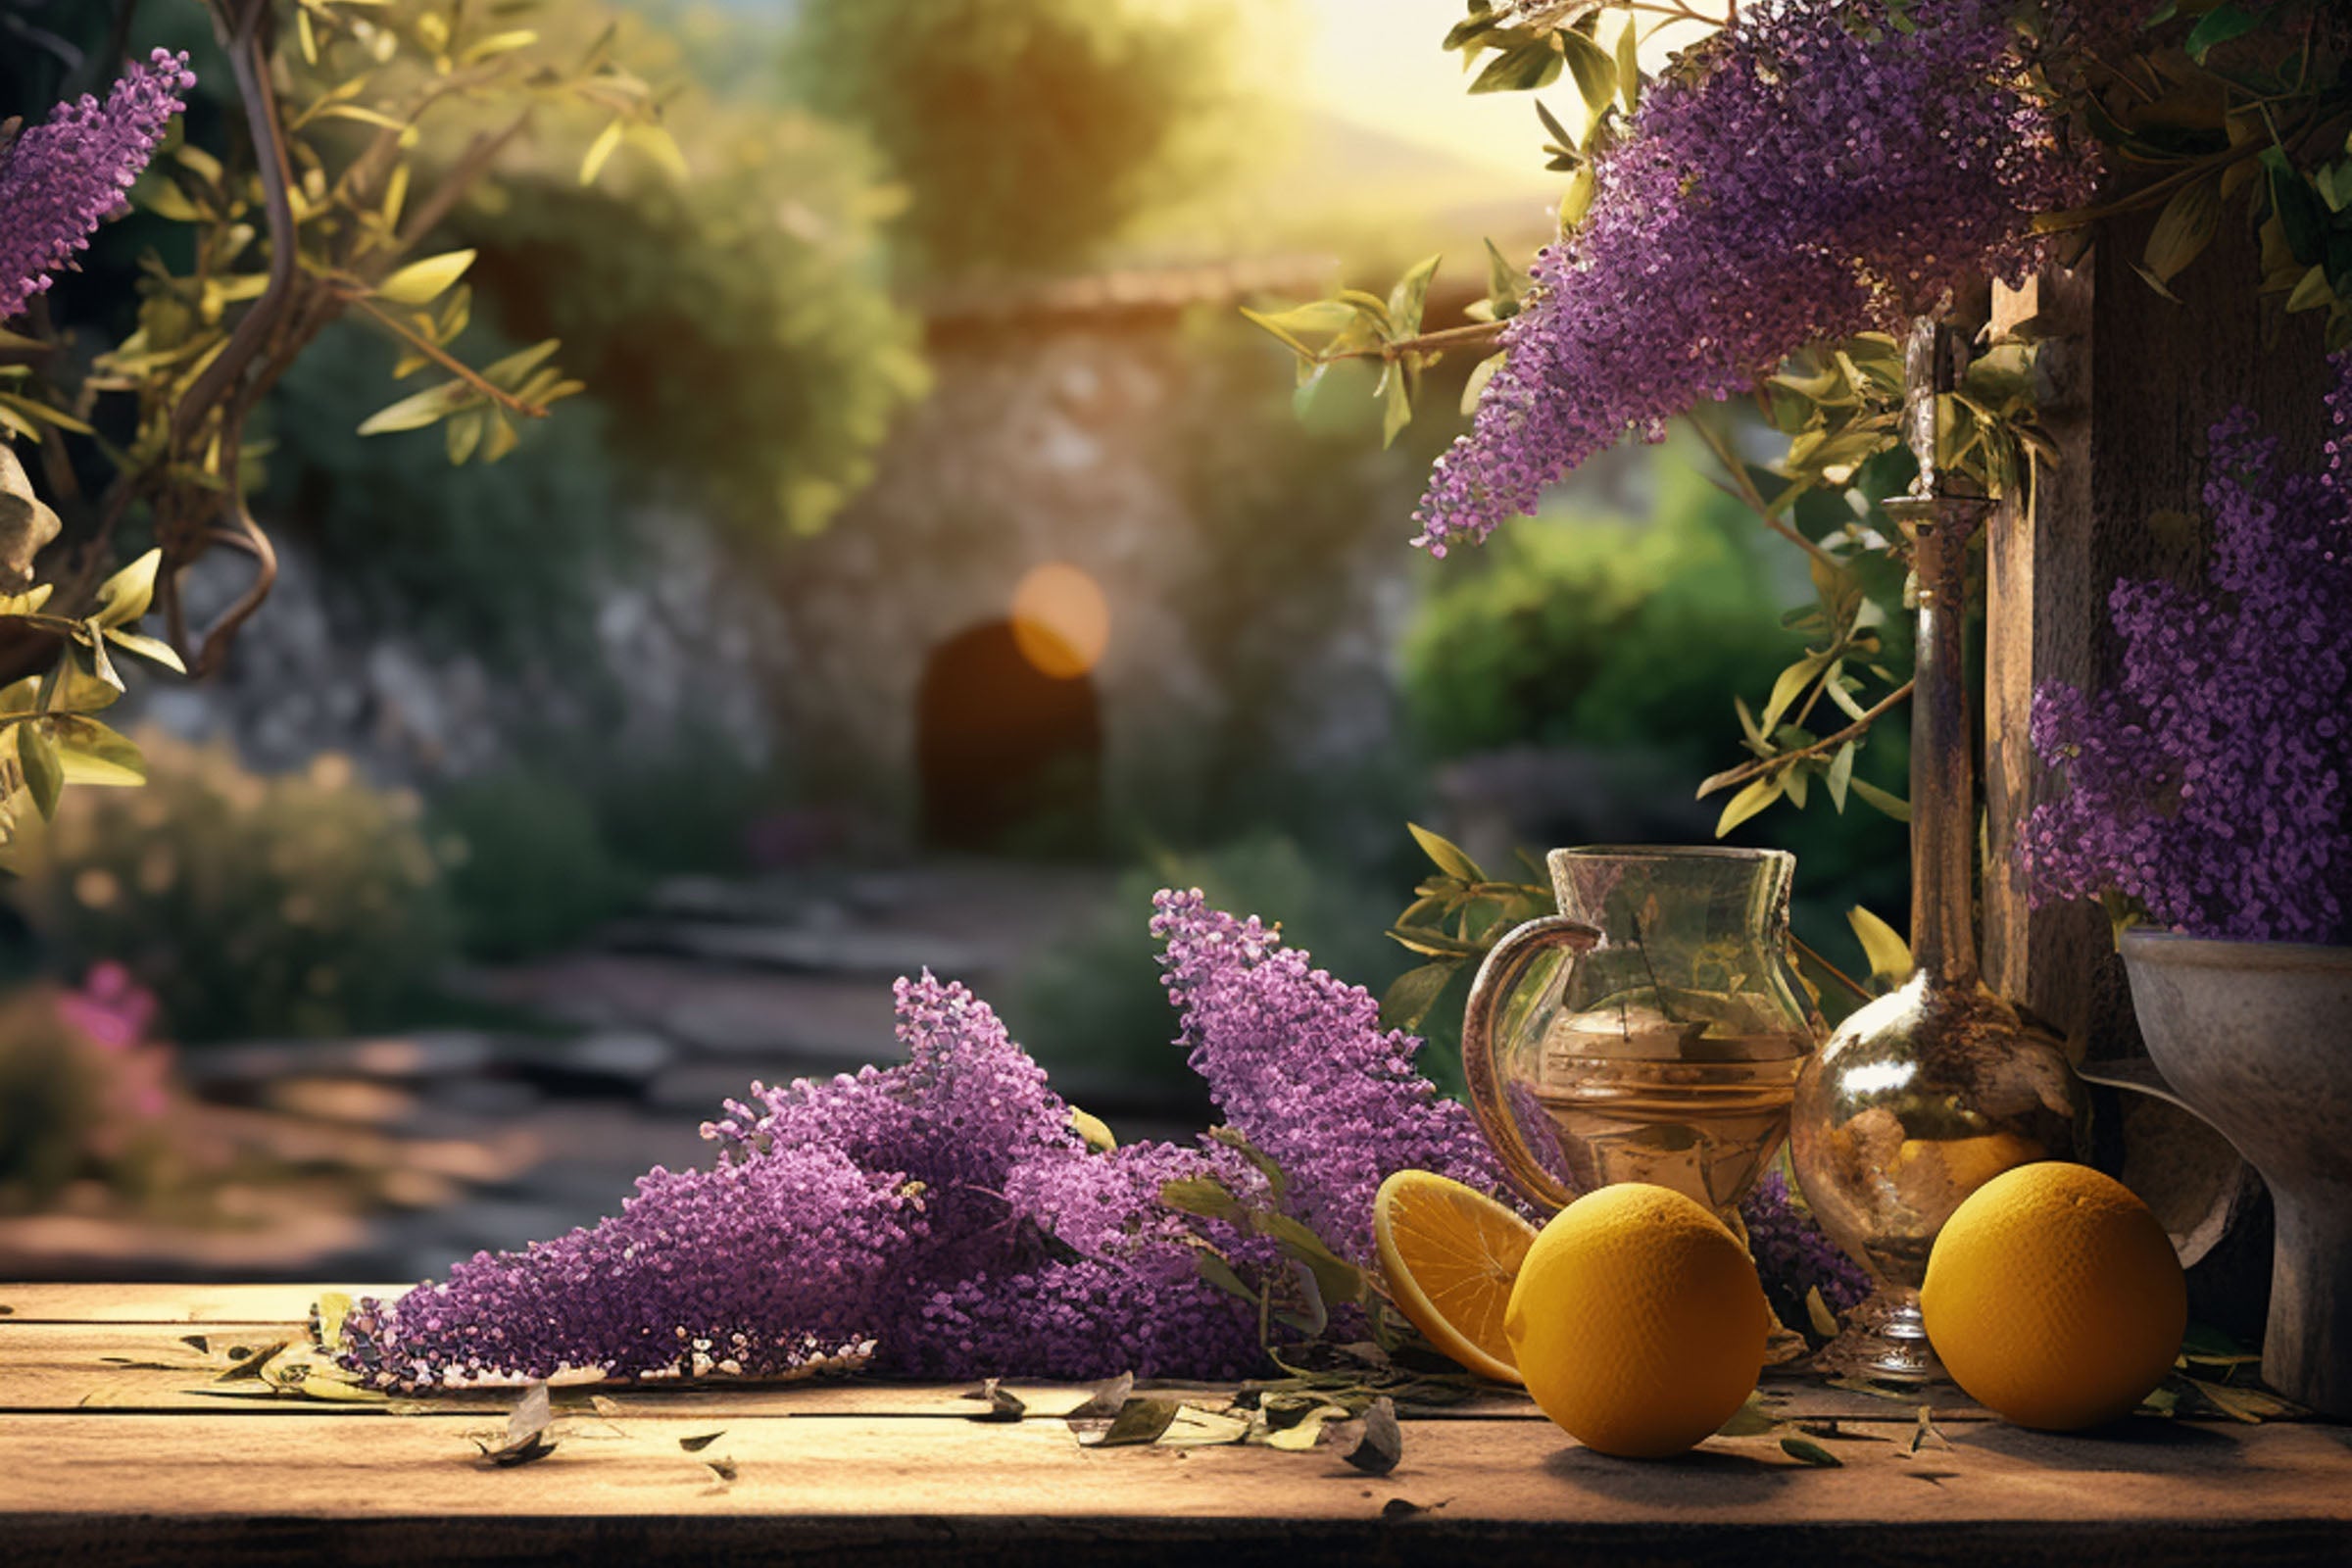 Lavender Lemon Fragrance Oil